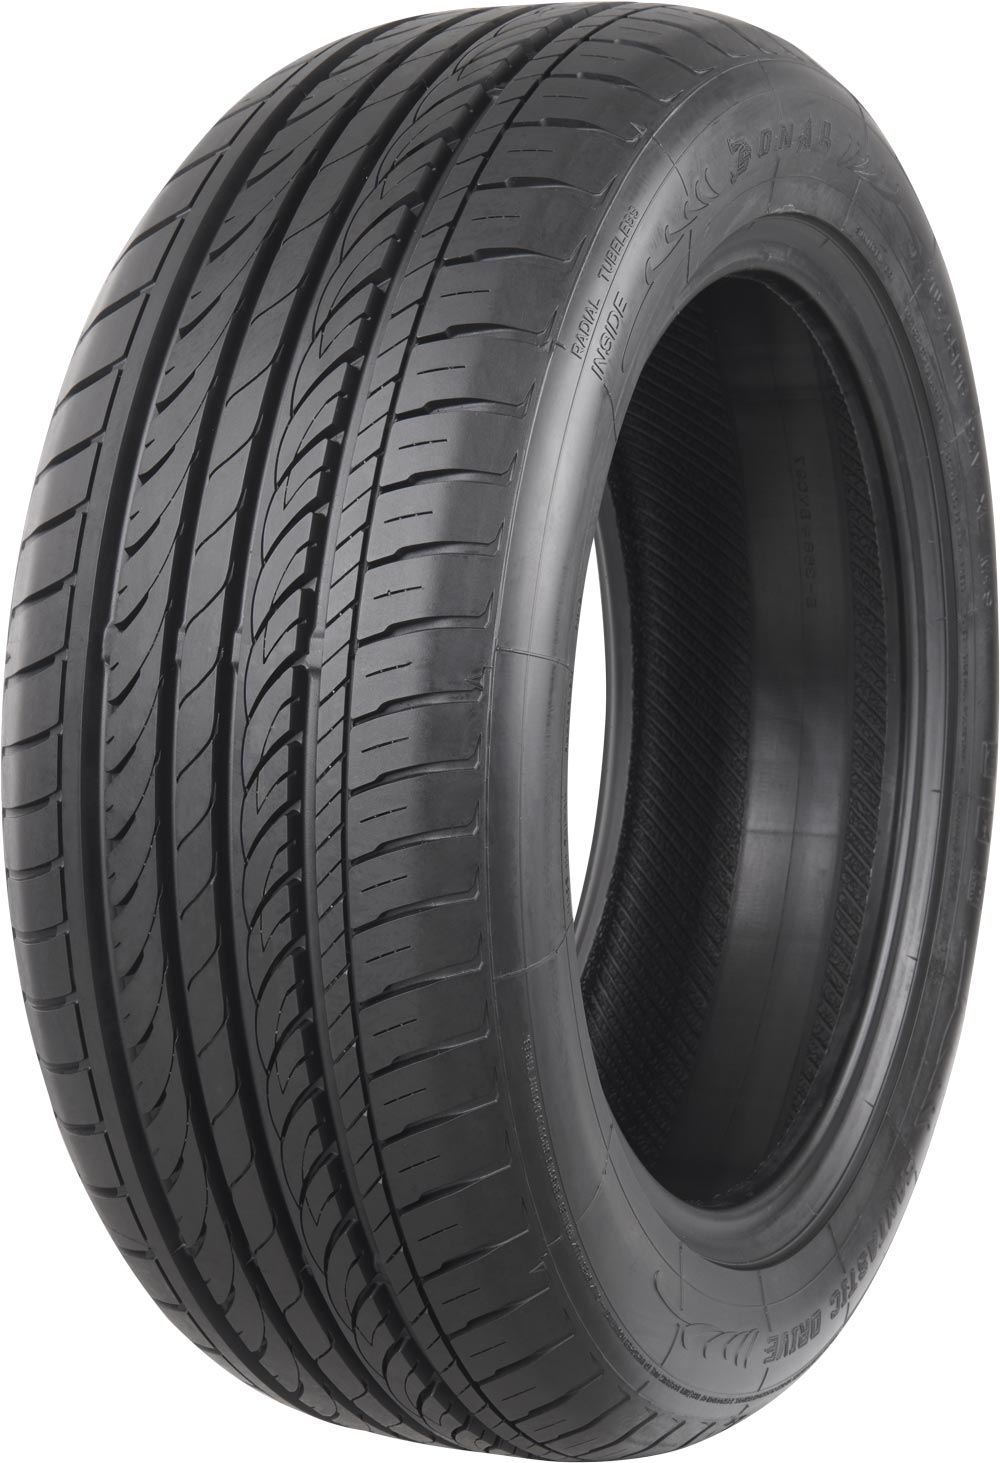 Автомобилни гуми SONAR SX-2 XL 225/50 R17 98Y